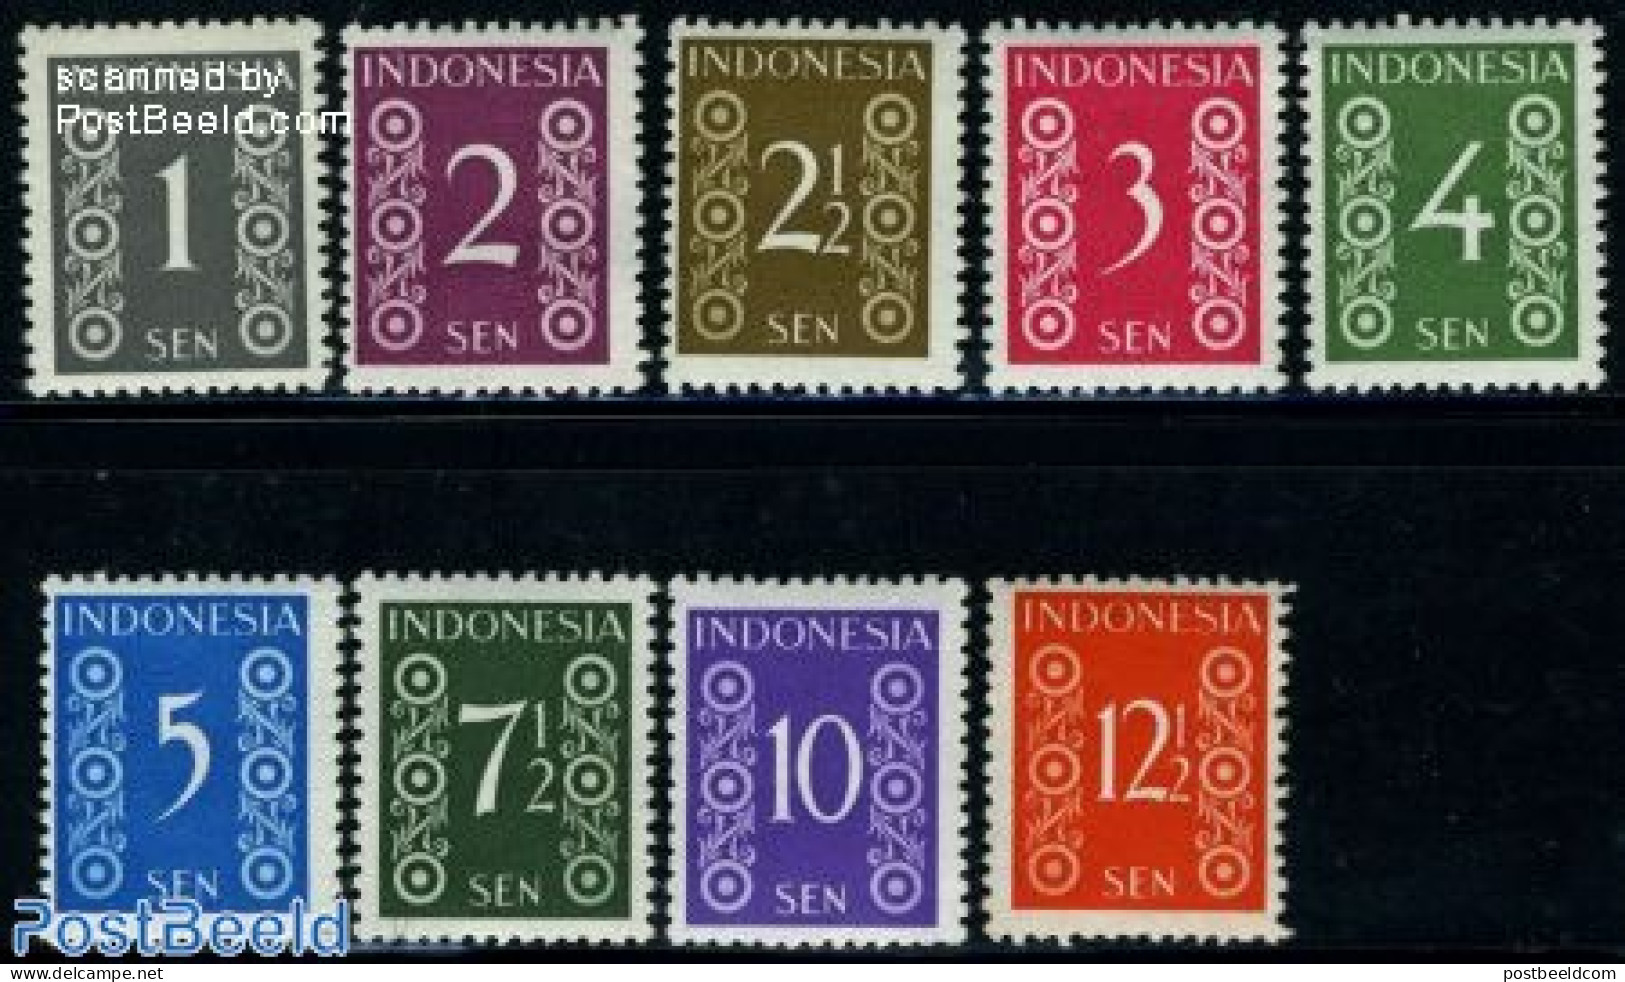 Indonesia 1949 Definitives 9v, Mint NH - Indonesien